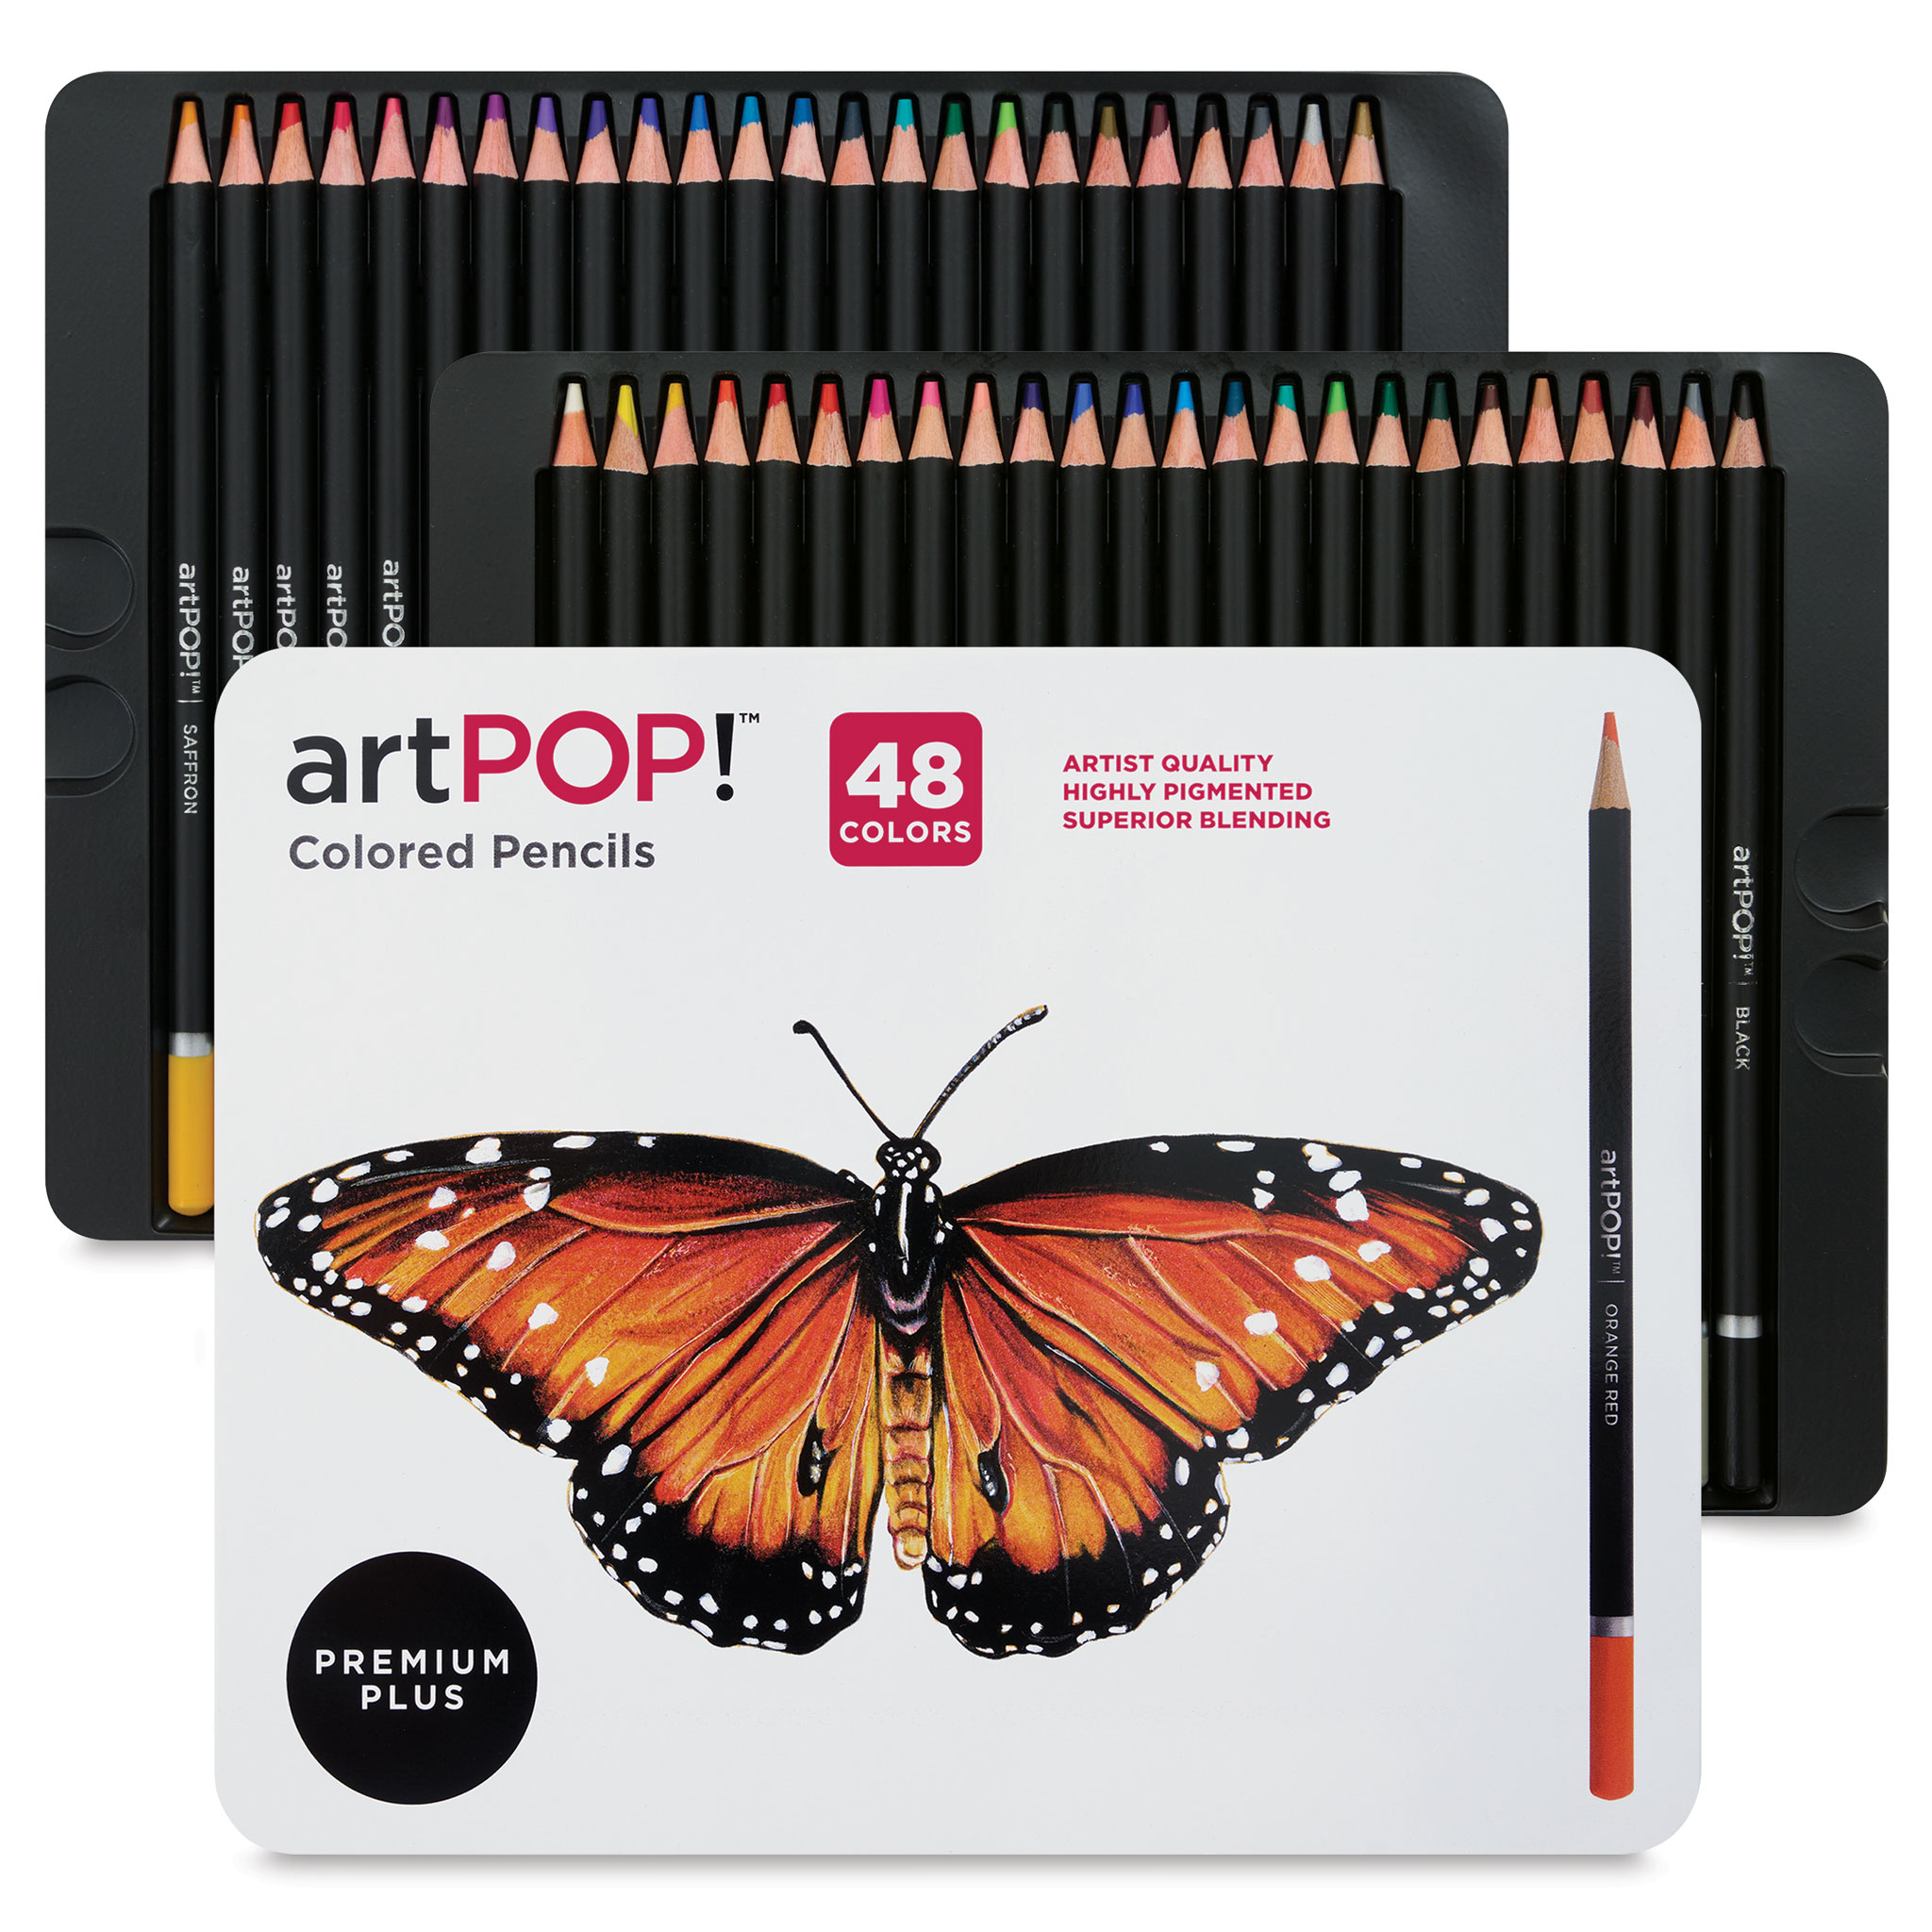 artPOP! Premium Plus Colored Pencils